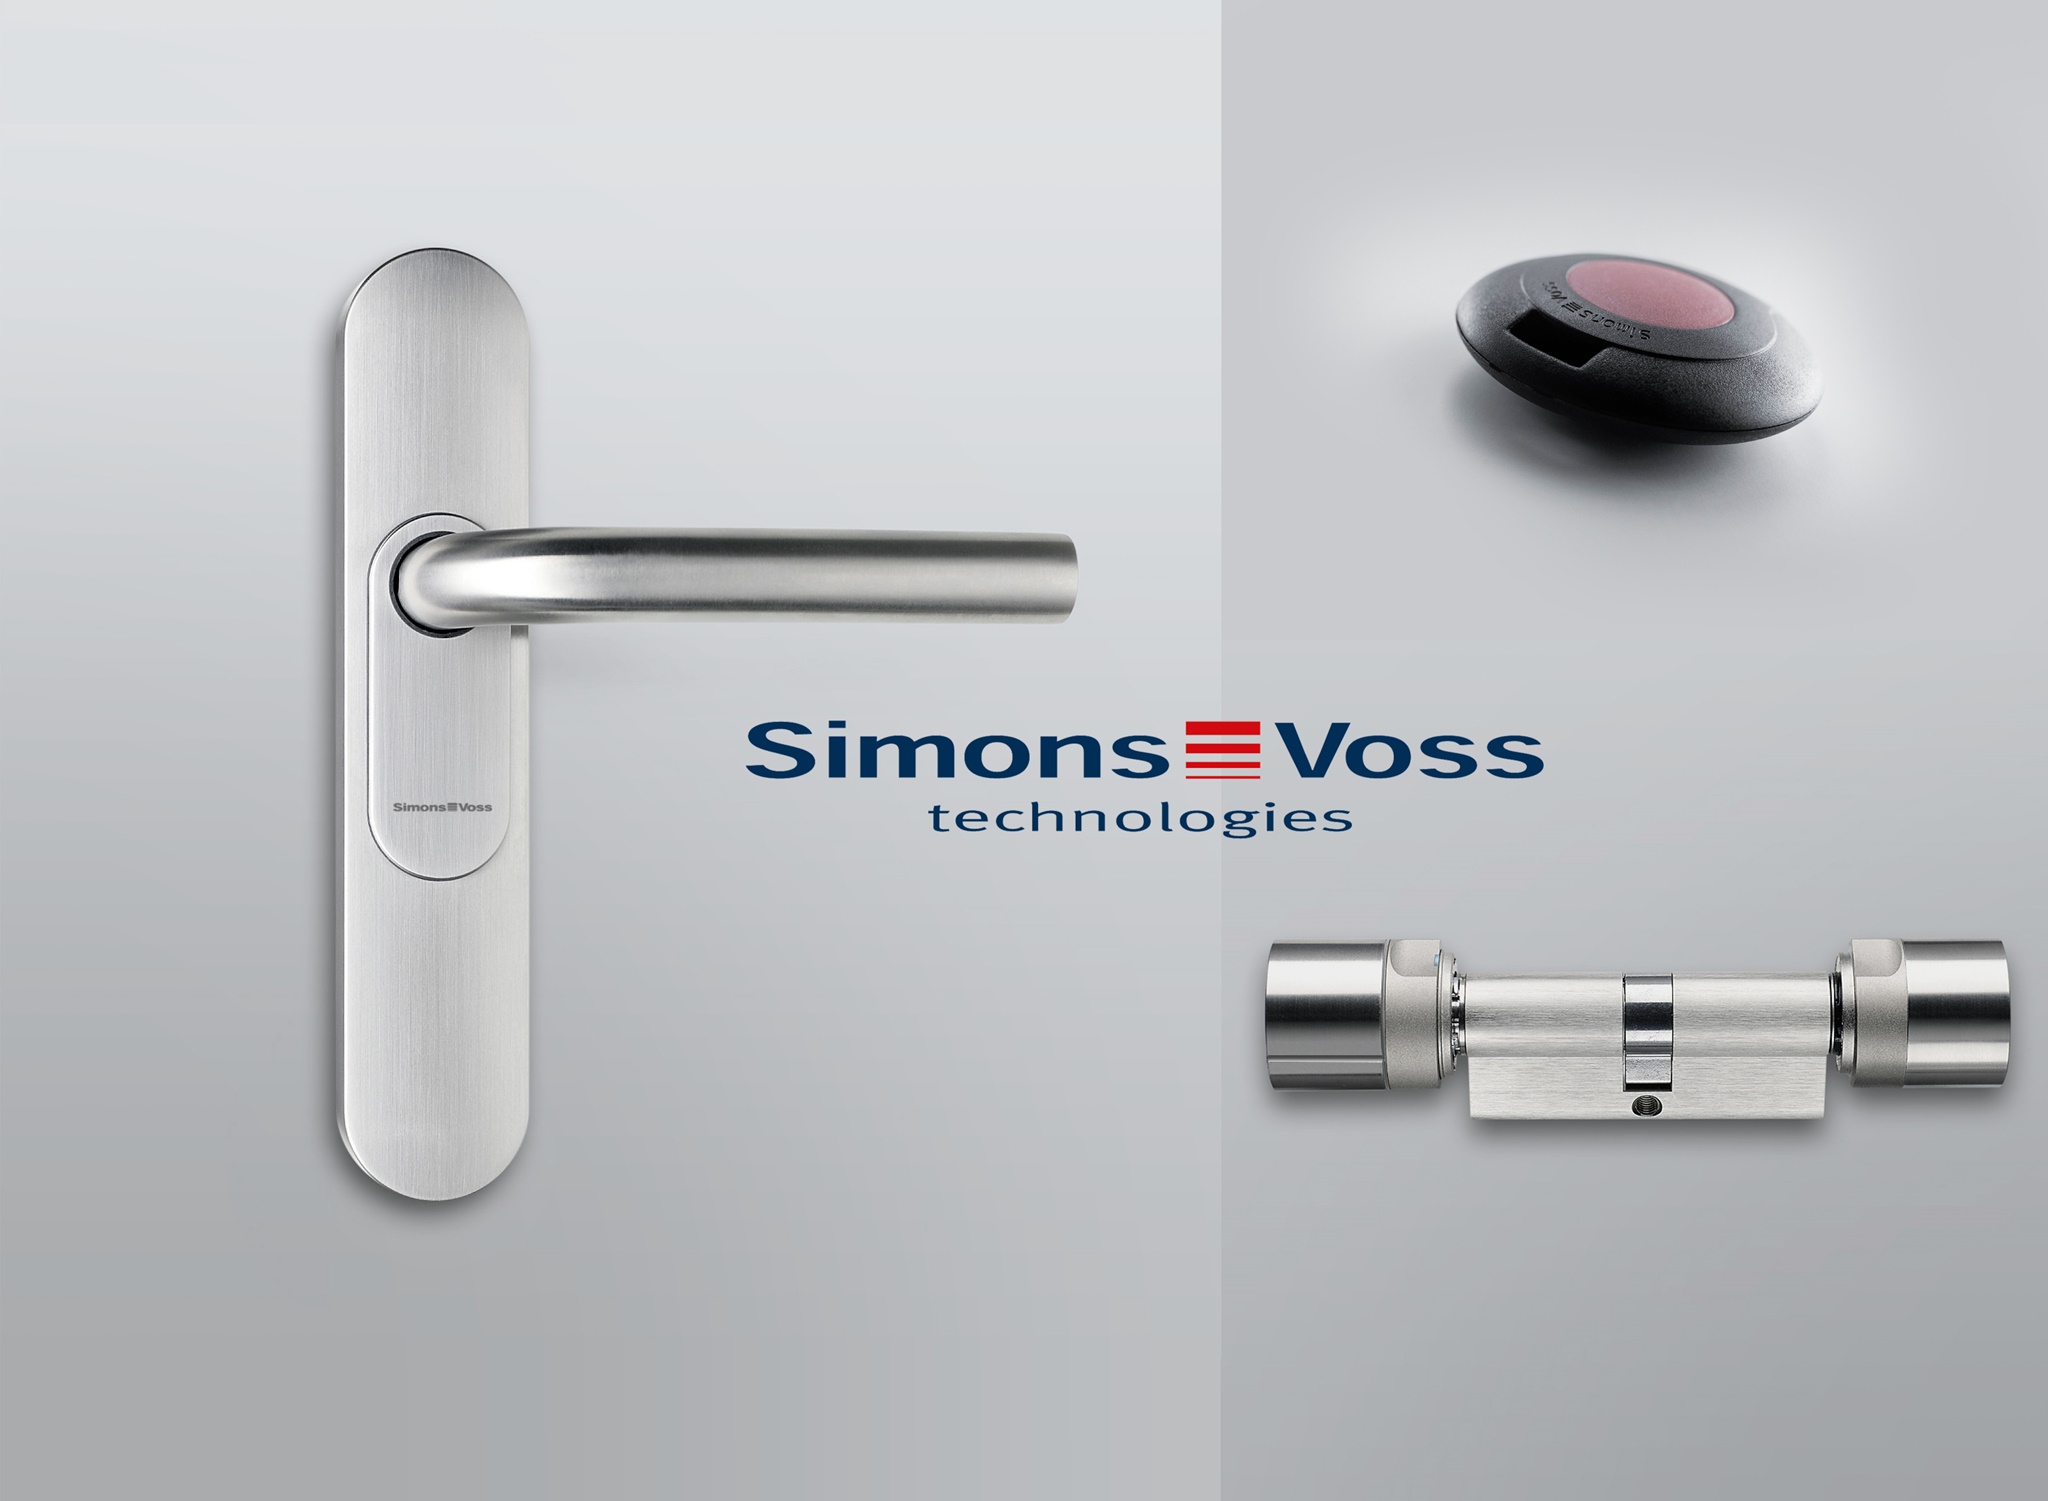 SimonsVoss Digitalzylinder und Beschläge